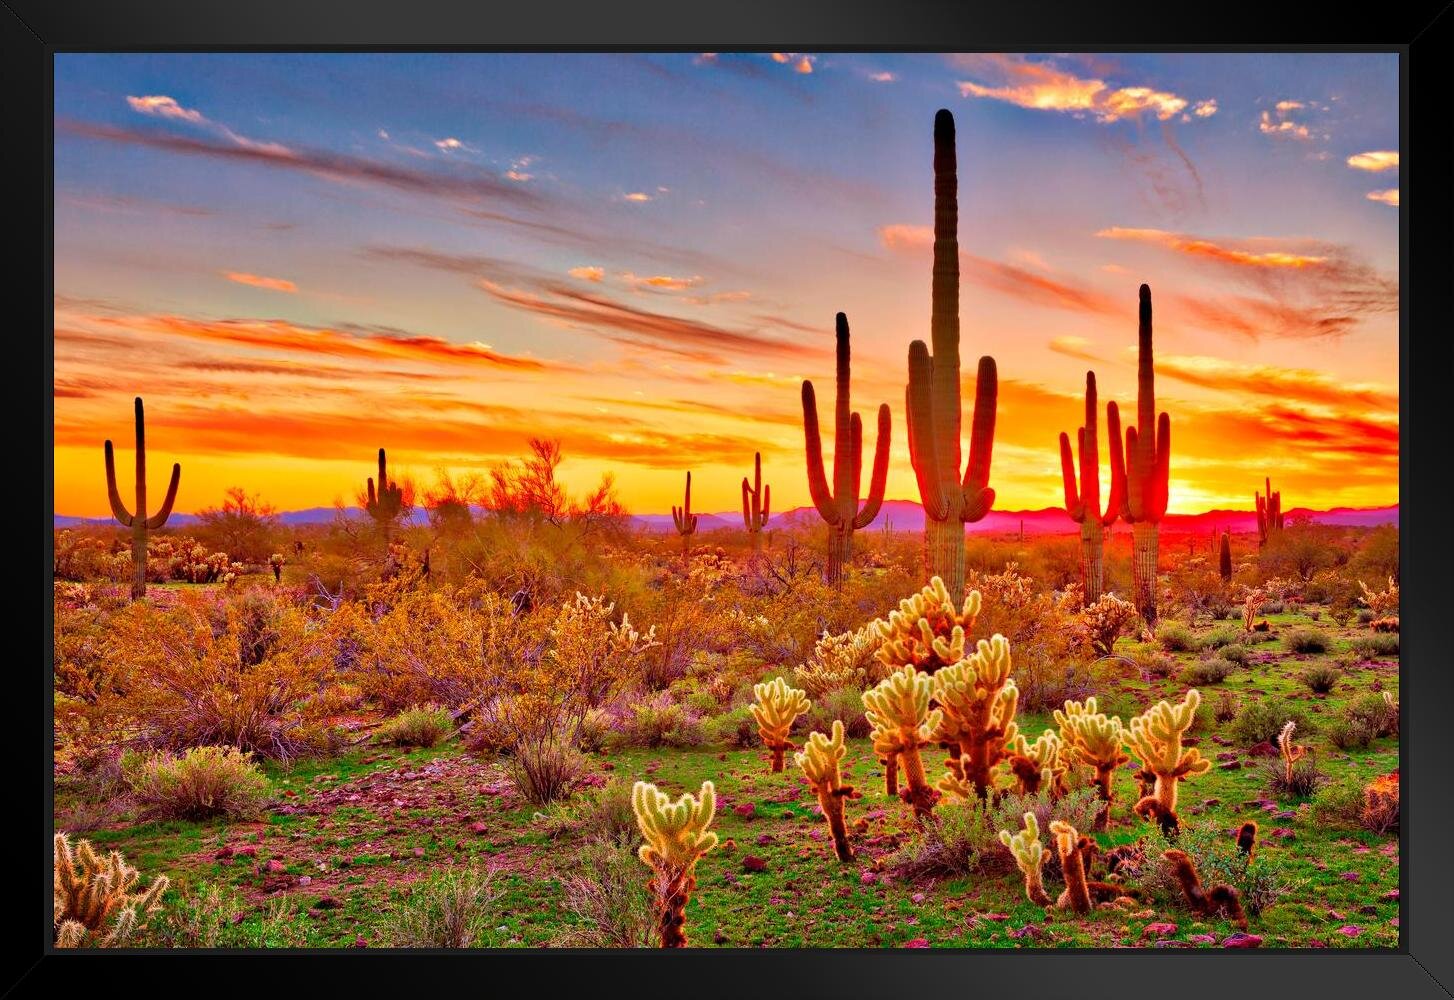 saguaro cactus sunset painting